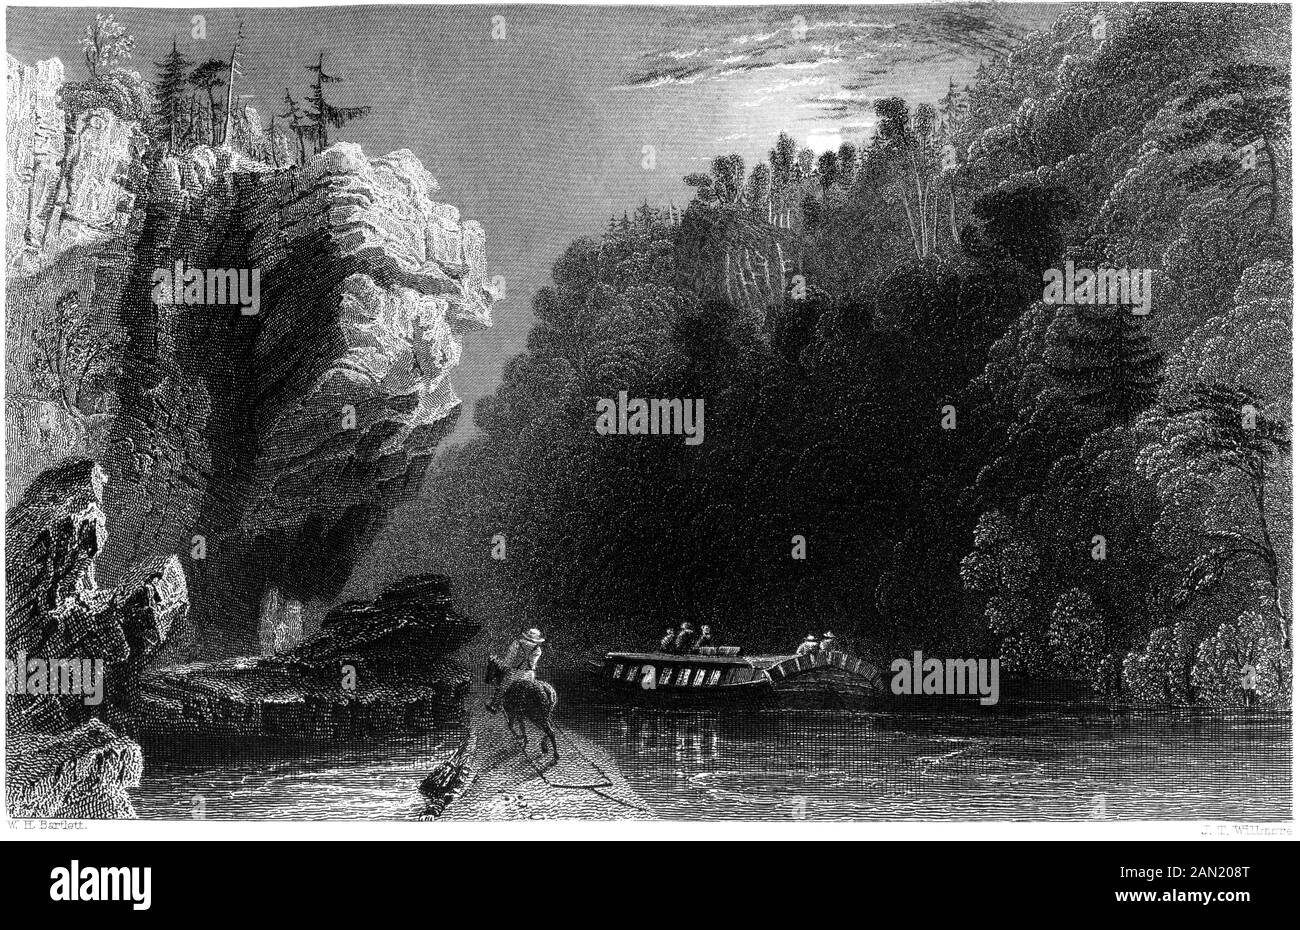 Eine Gravur auf dem Erie Kanal, in der Nähe von Little Fällt bei hoher Auflösung gescannt. aus einem Buch im Jahre 1840 gedruckt. Glaubten copyright frei. Stockfoto